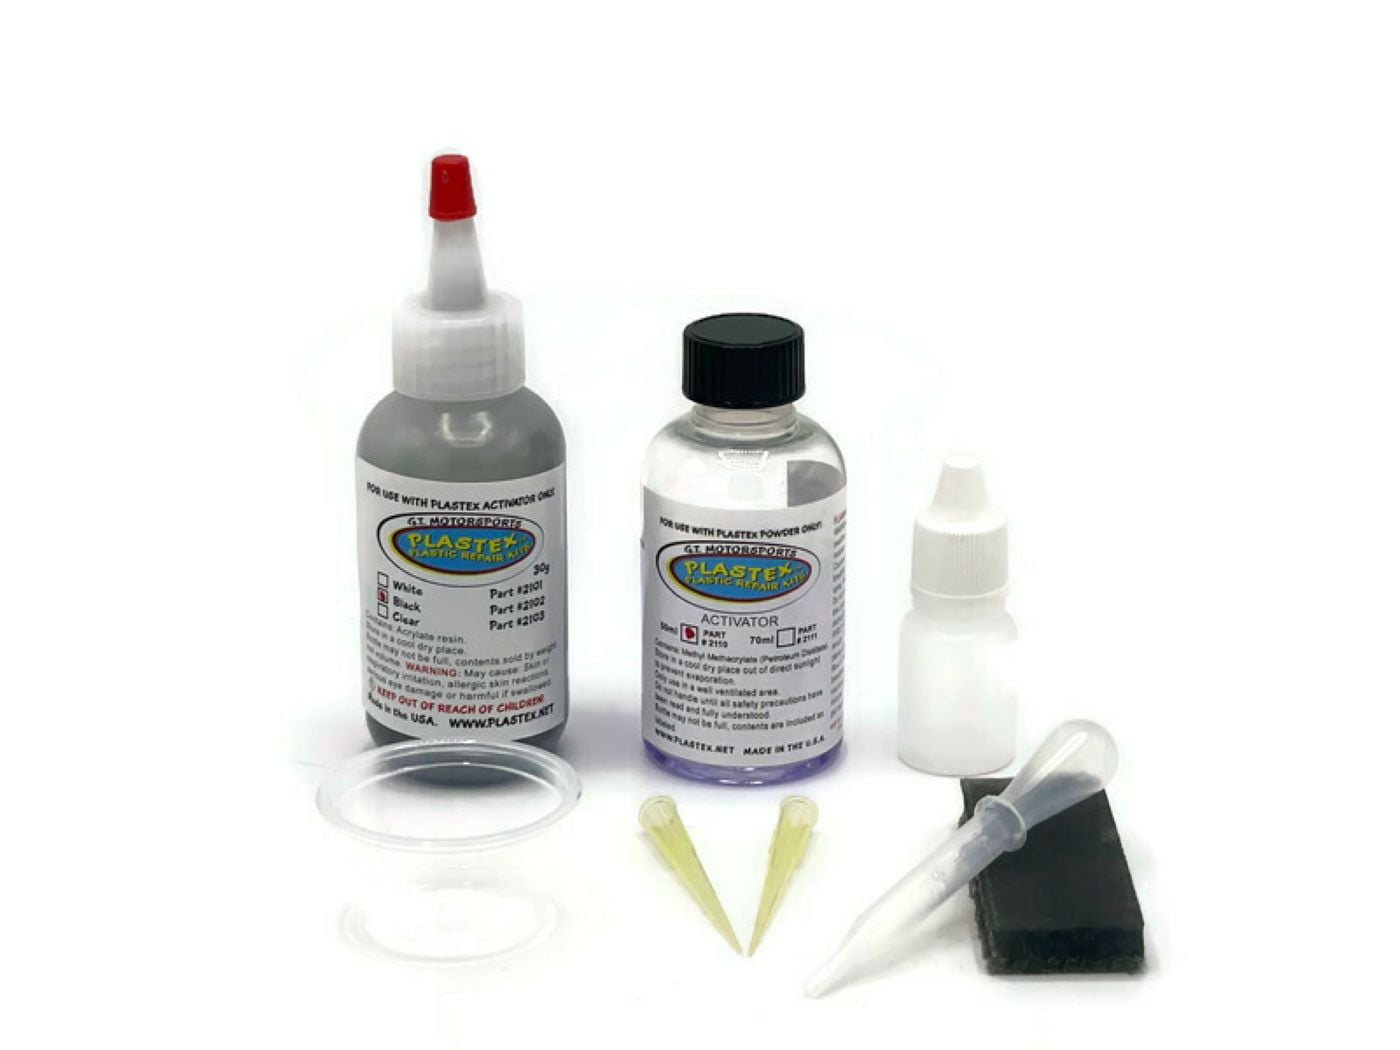 Plastex Plastic Repair Kits, Plastic Adhesive - Easily Glue, Repair or  Remake Broken Plastic, Fiberglass, Wood & More! Small Black Travel Kit  #1802 